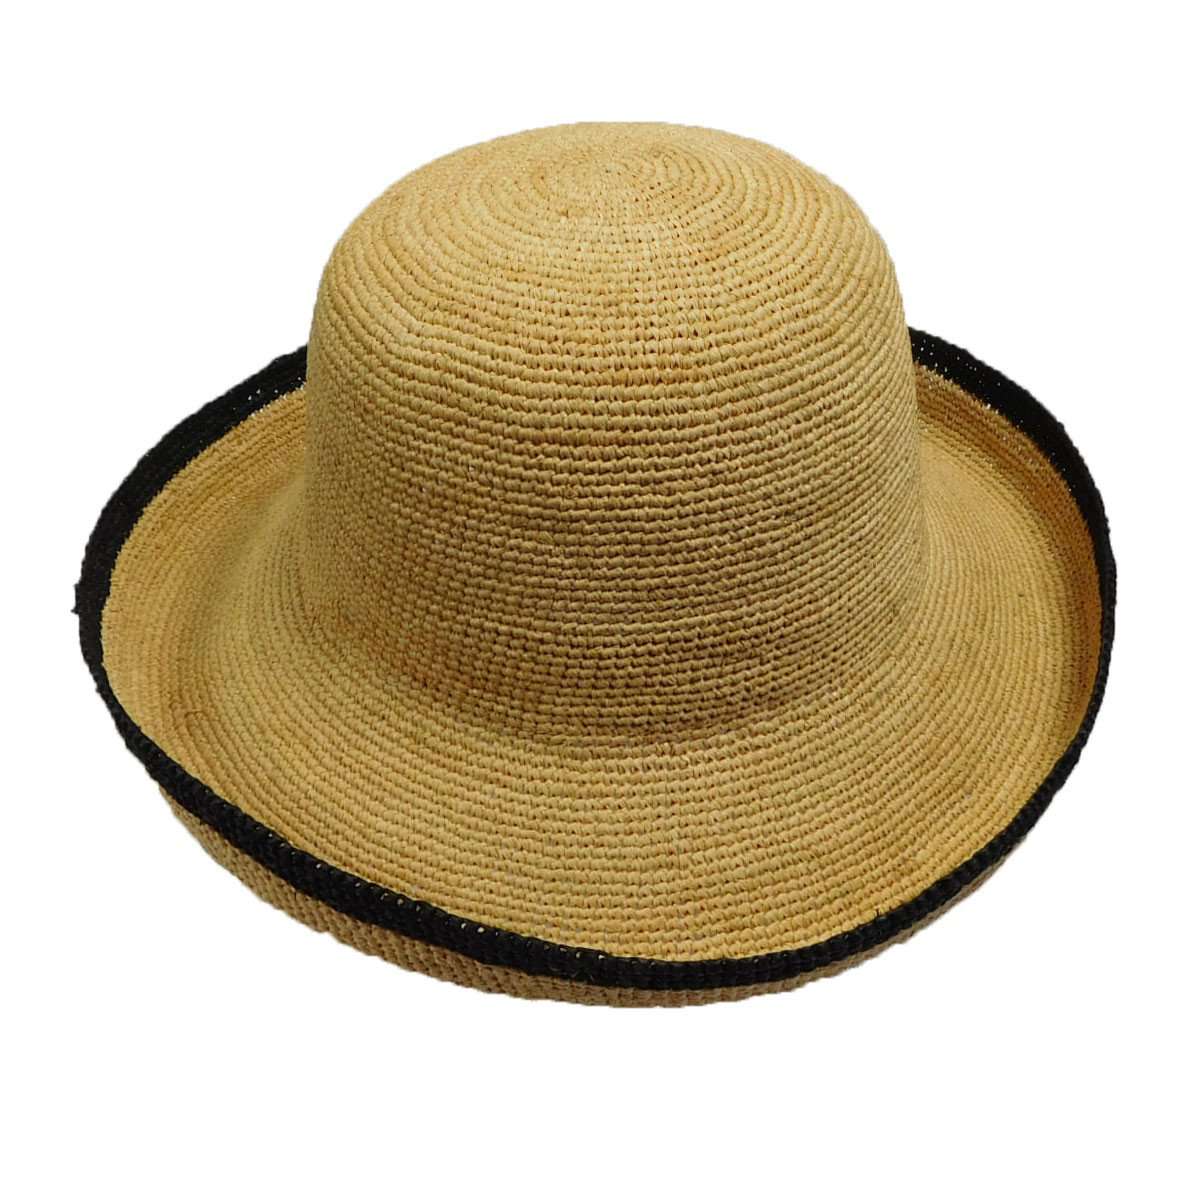 Hand Crocheted Turned Up Brim Hat - Natural, Kettle Brim Hat - SetarTrading Hats 